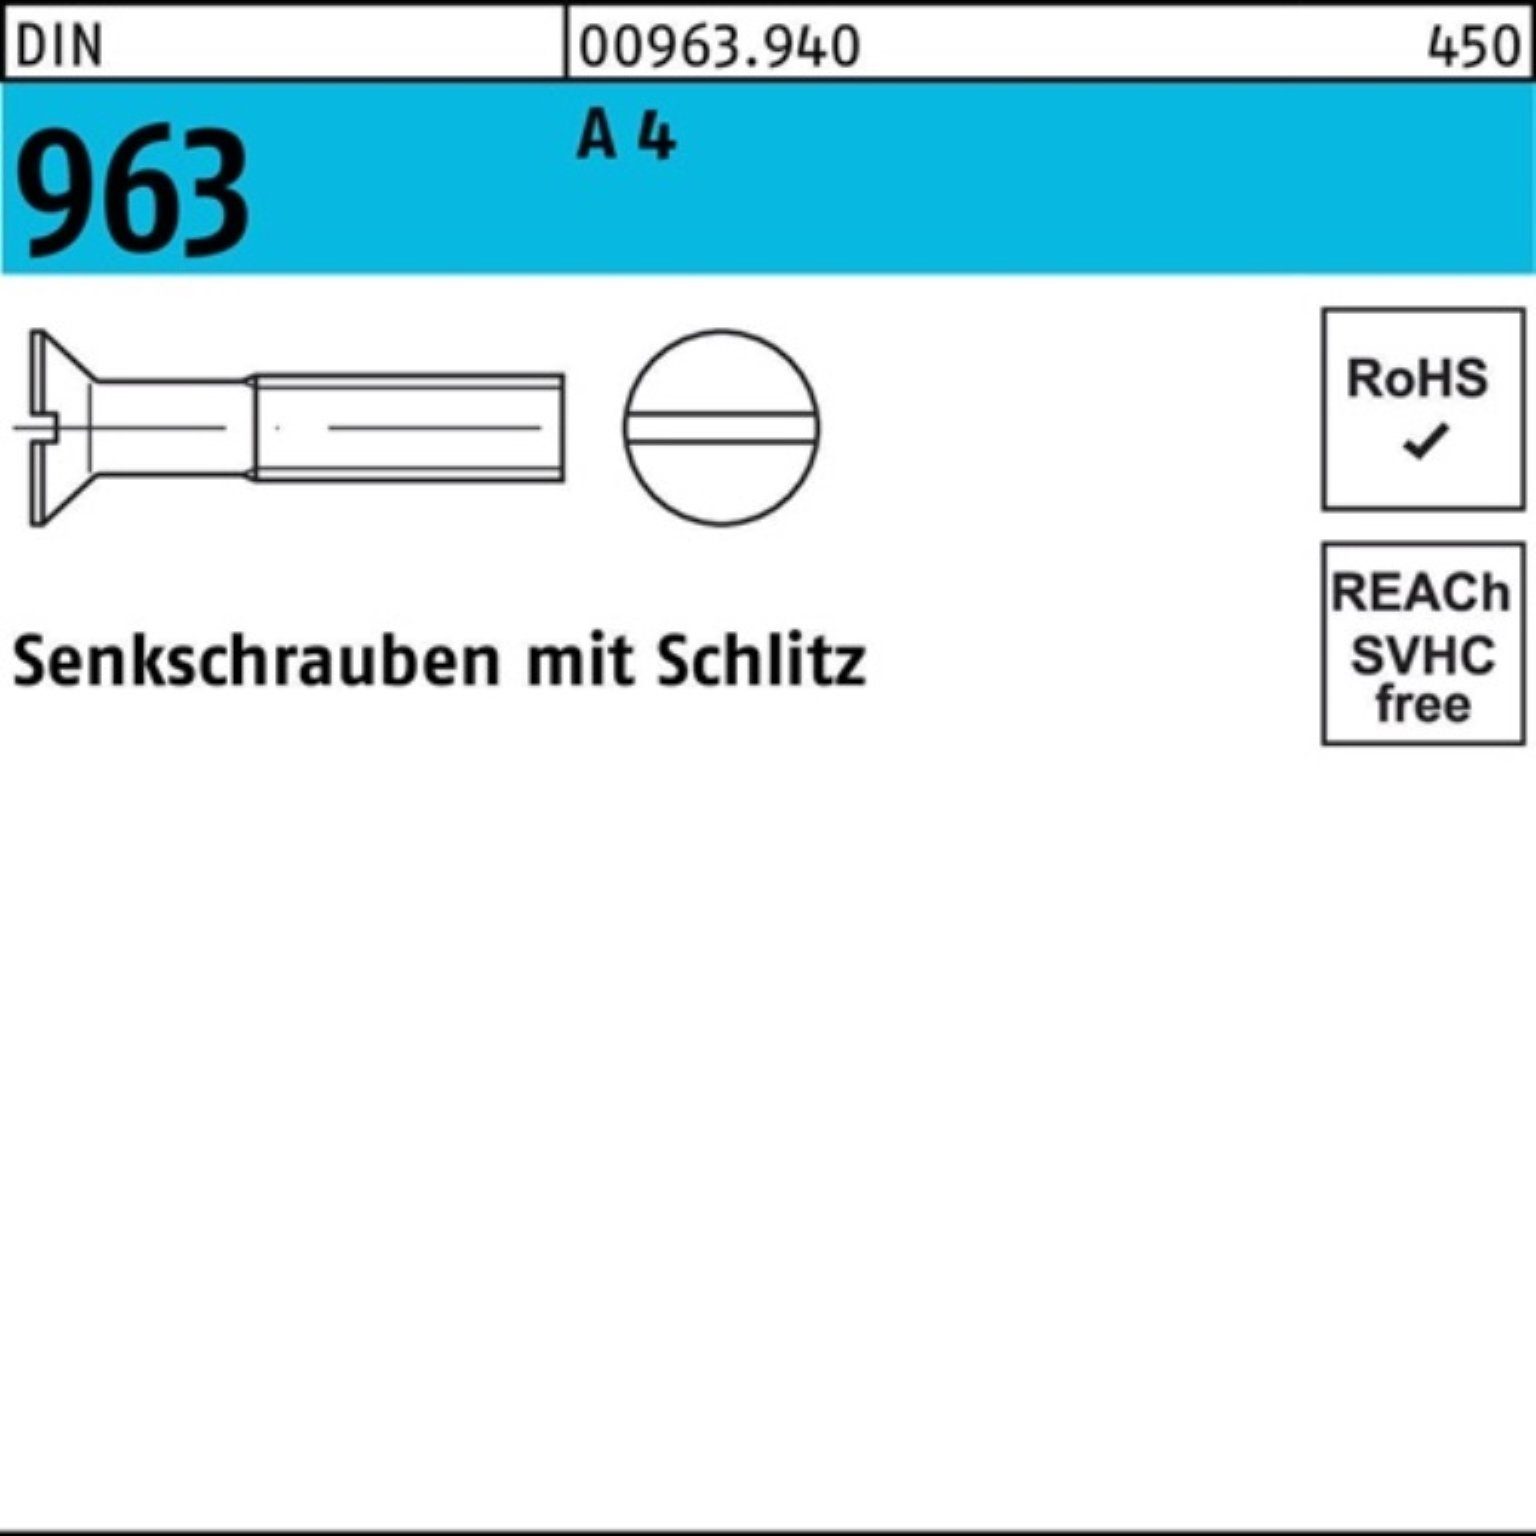 Schlitz Senkschraube 100er 100 4 963 DIN Reyher A Senkschraube M8x DIN 25 Pack 963 Stück